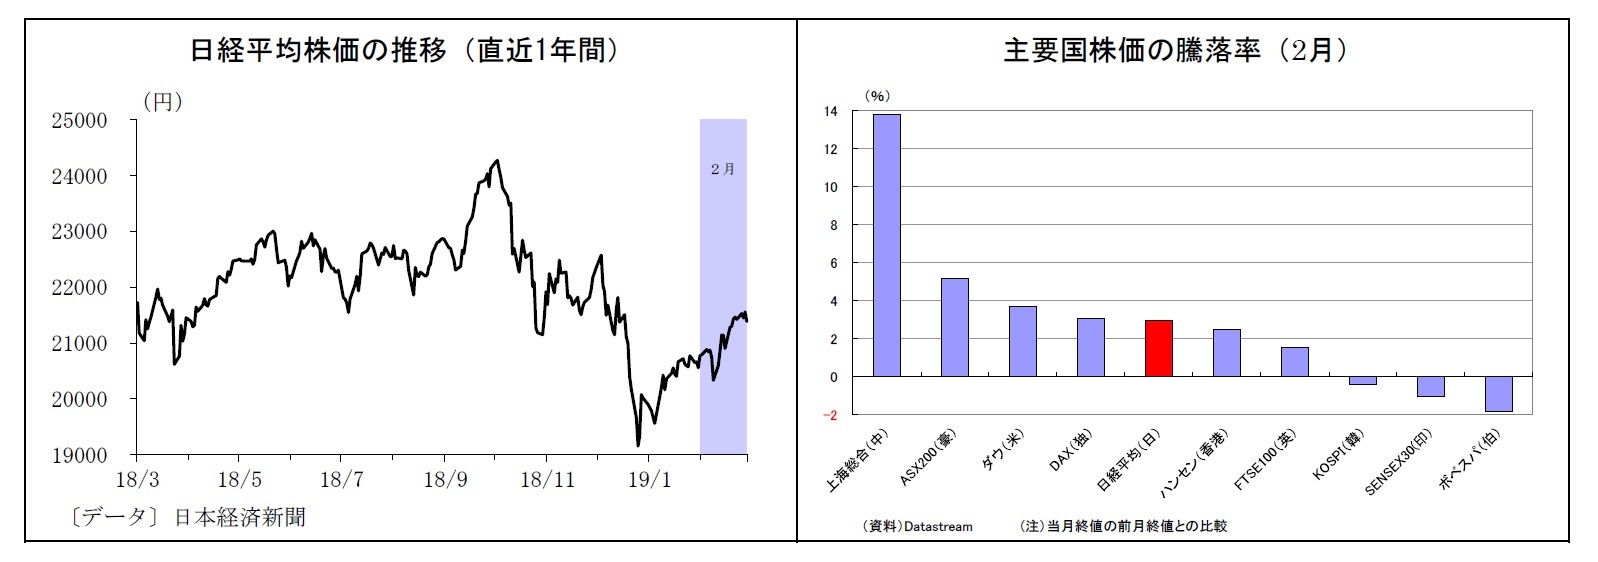 日経平均株価の推移（直近1年間）/主要国株価の騰落率（2月）